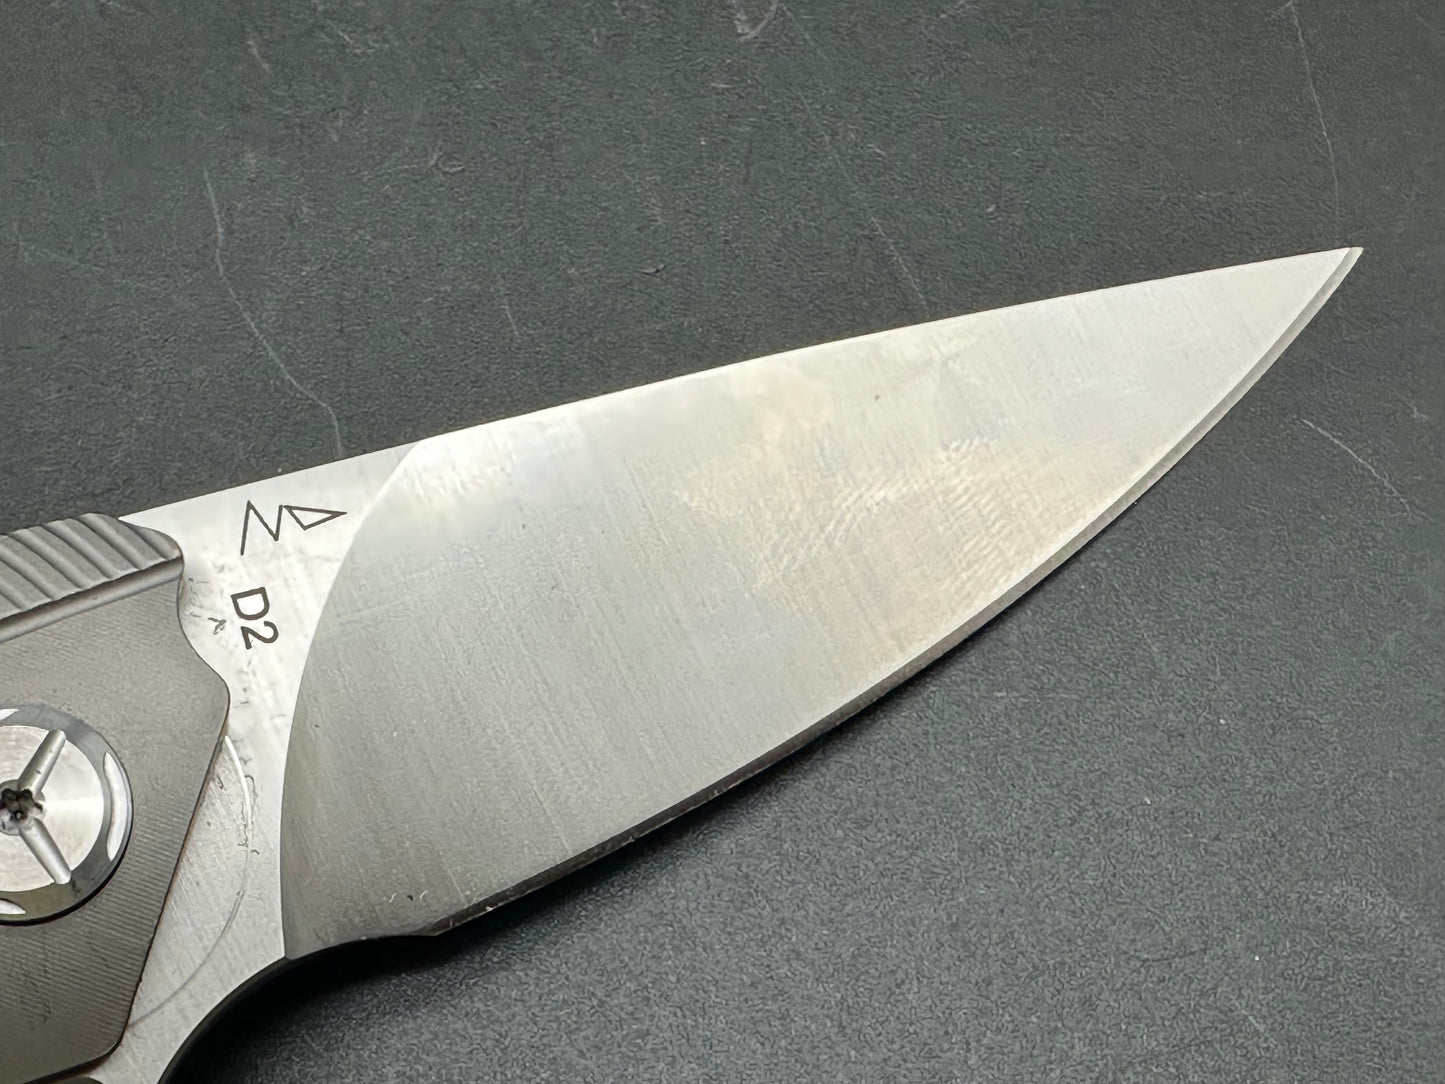 TwoSun TS102 titanium handle w/D2 blade